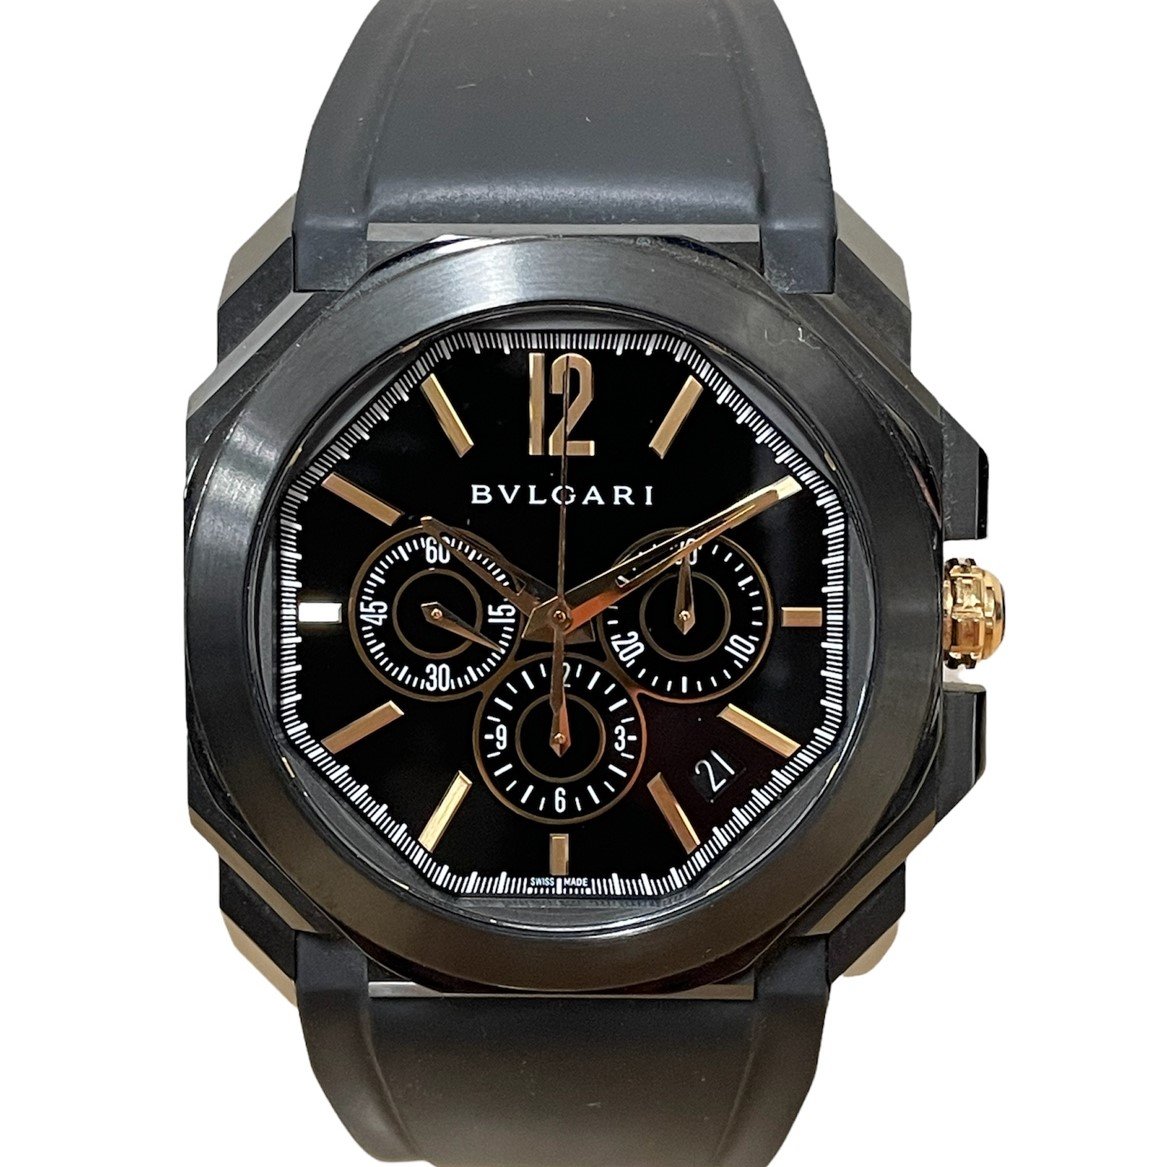 ブルガリのBGO41SCH オクト ヴェロチッシモ クロノグラフ ラバーバンド 自動巻き 腕時計の買取実績です。